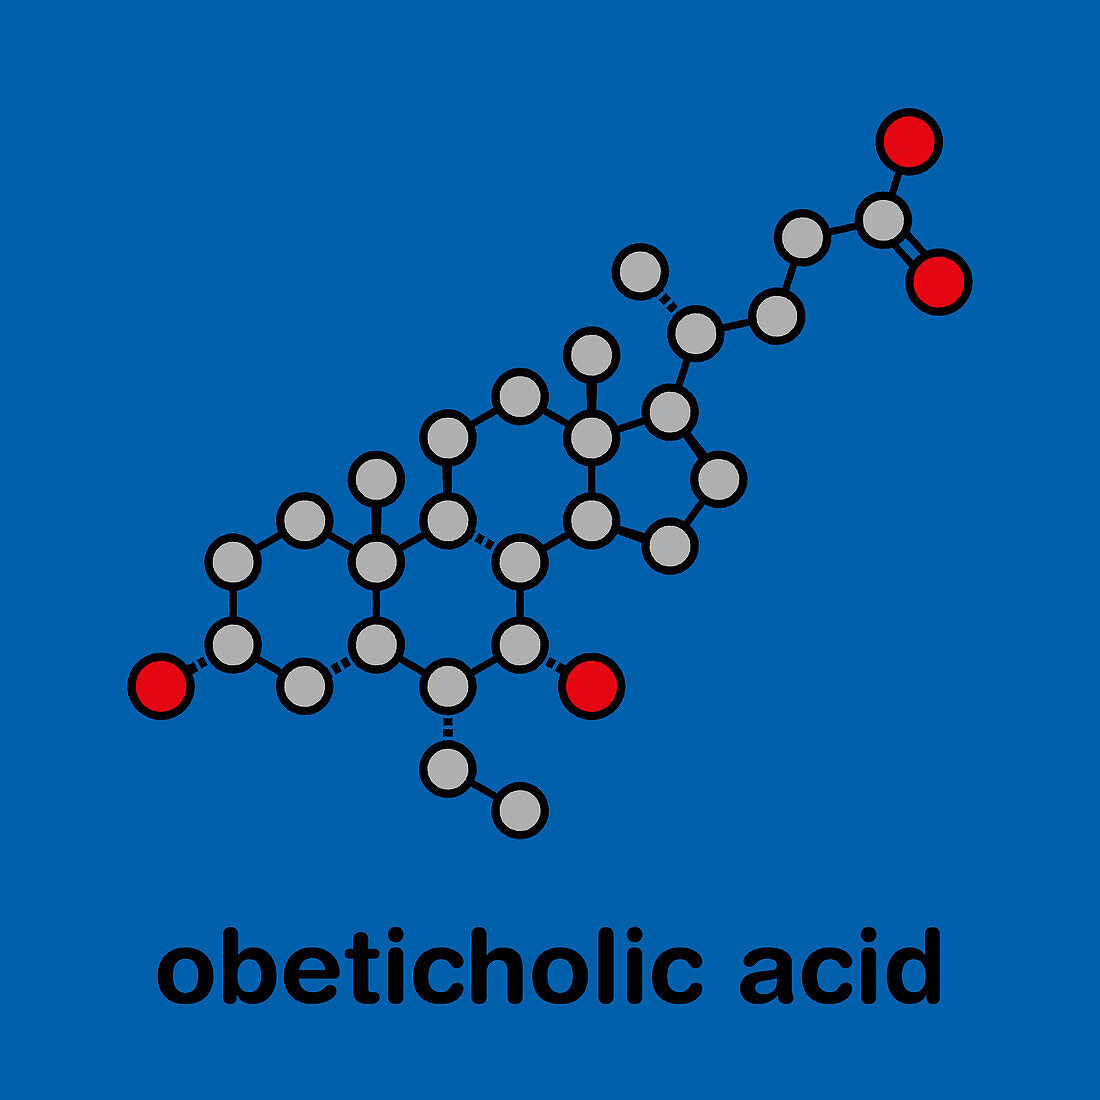 Obeticholic acid liver disease drug molecule, illustration